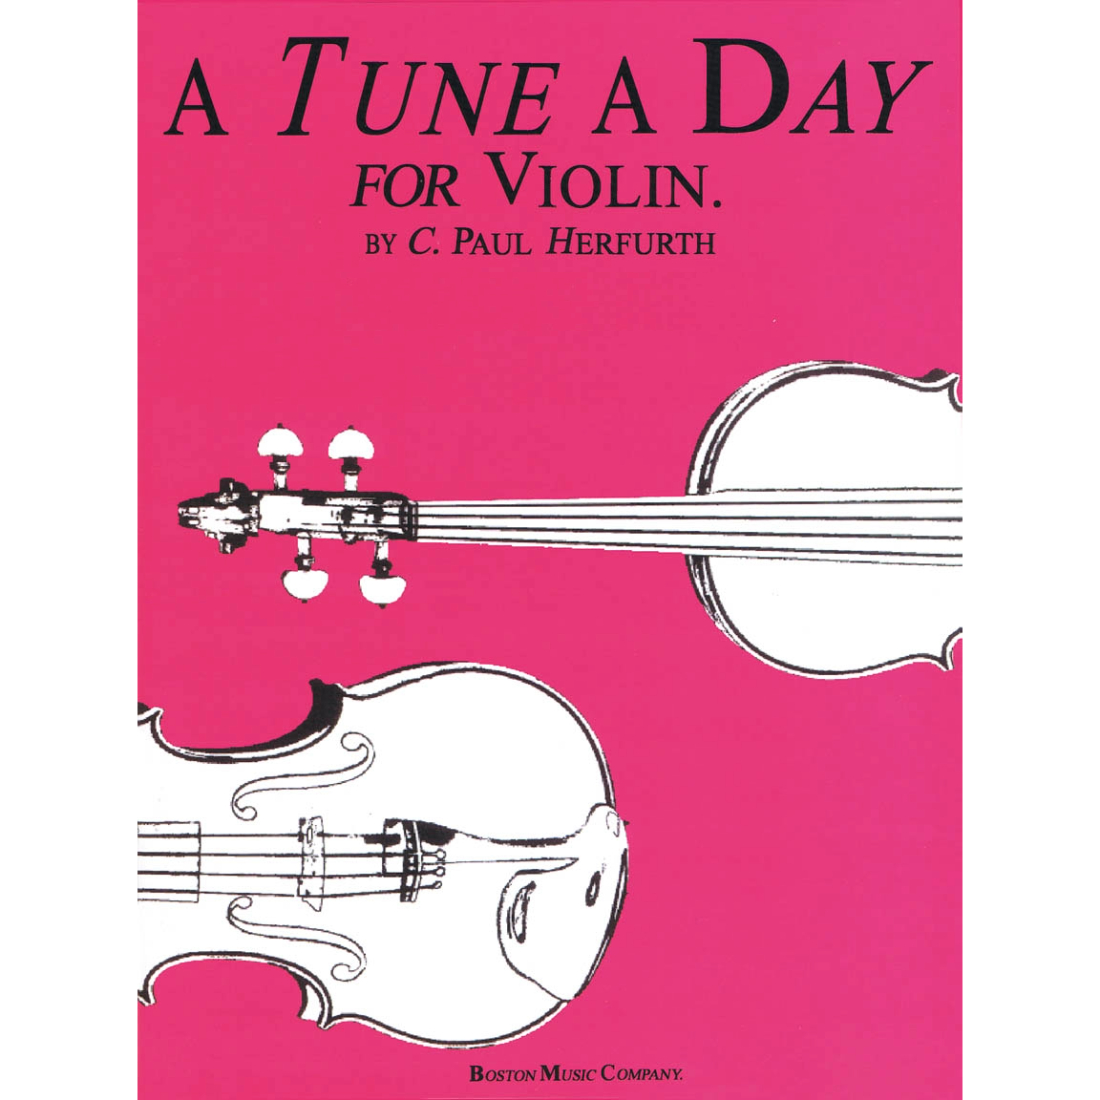 Fuchsia "A Tune A Day" violin method book with black and white drawn violin